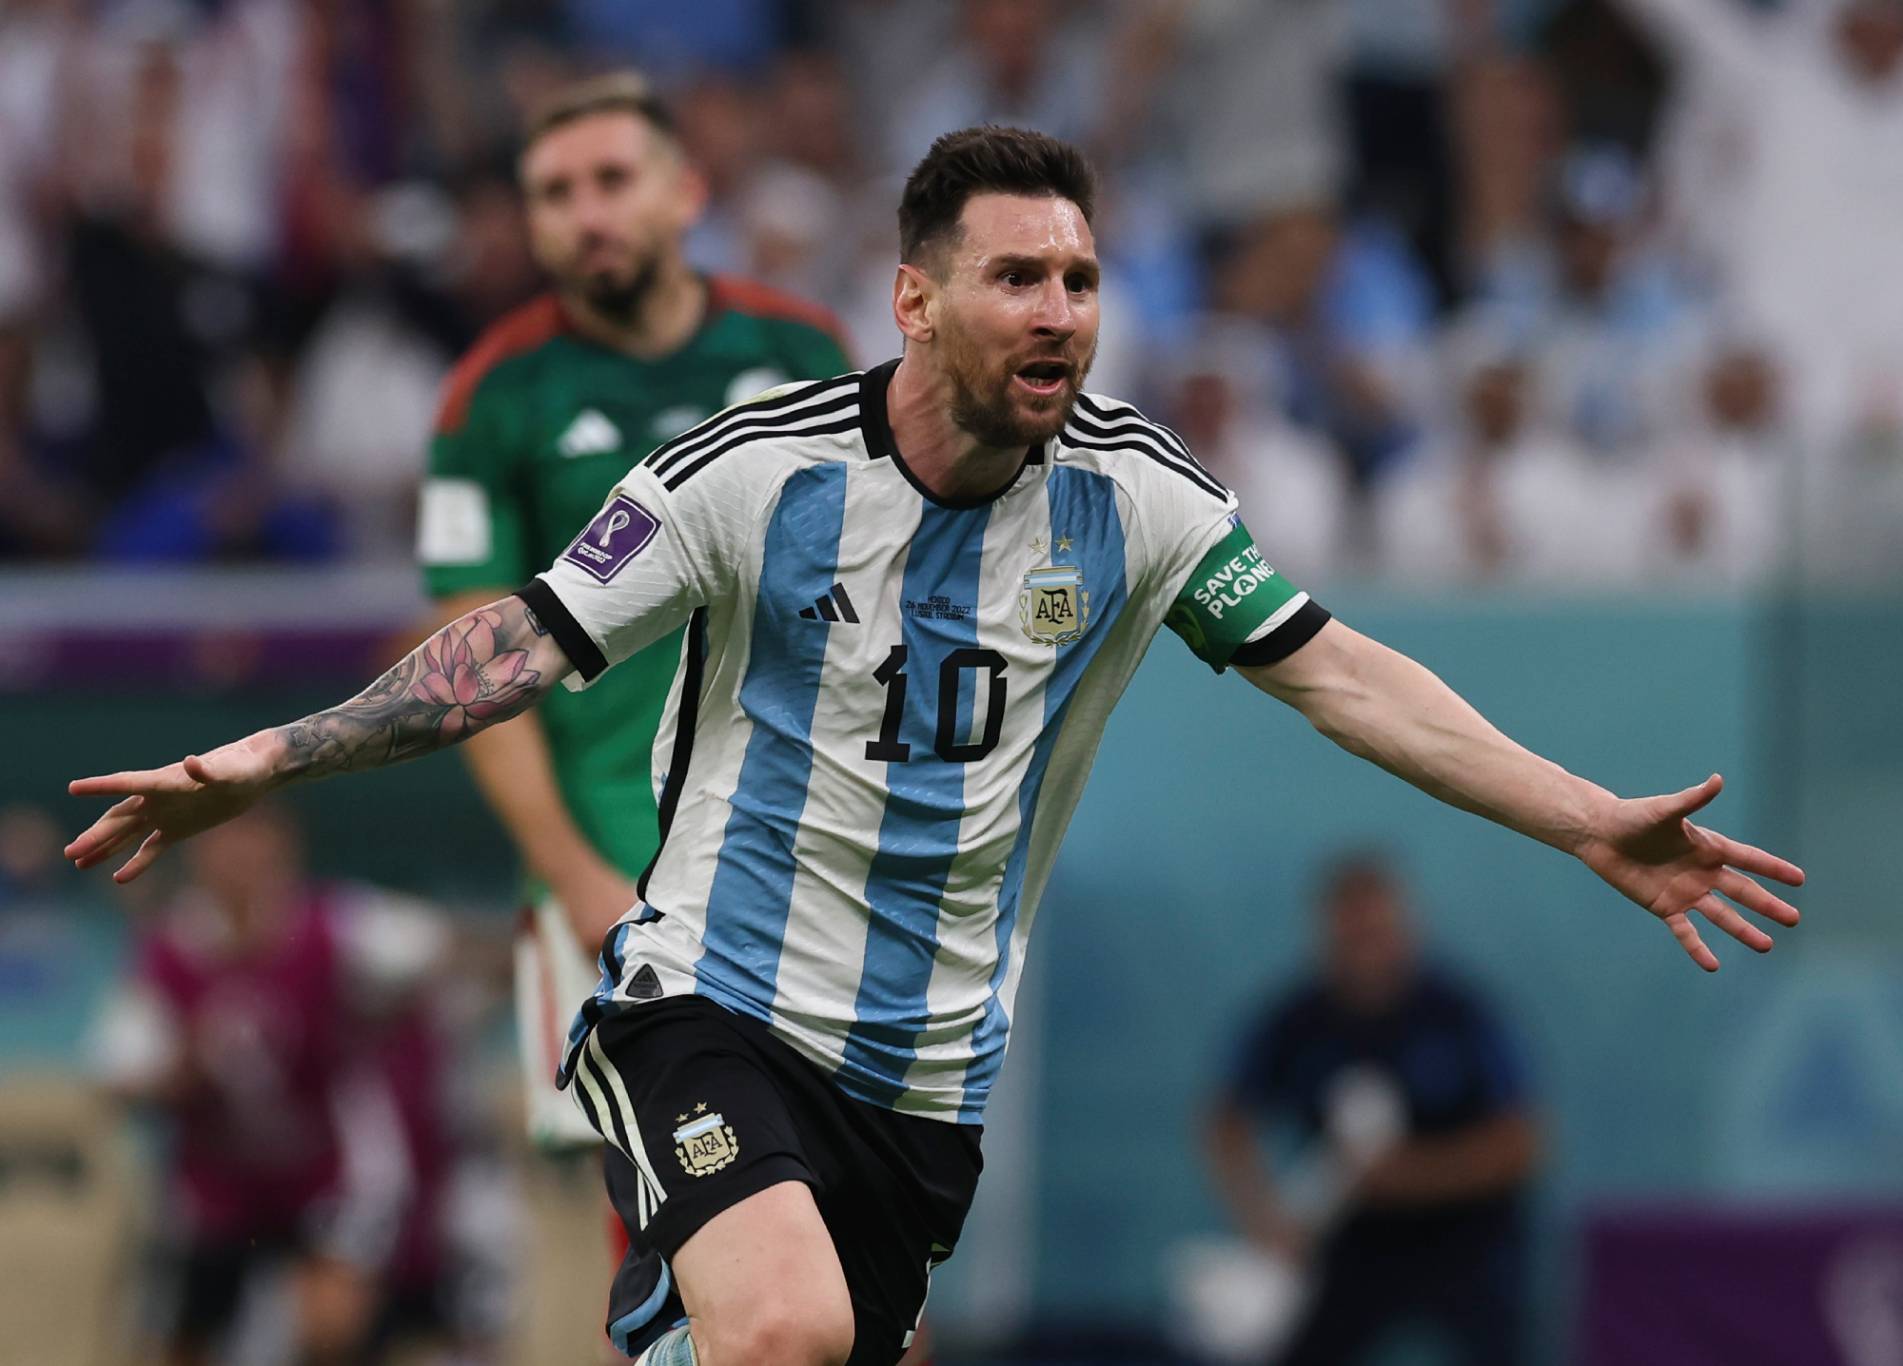 Rencana induk Arnold untuk menyingkirkan Messi dan ‘menghadapi wajah’ Argentina